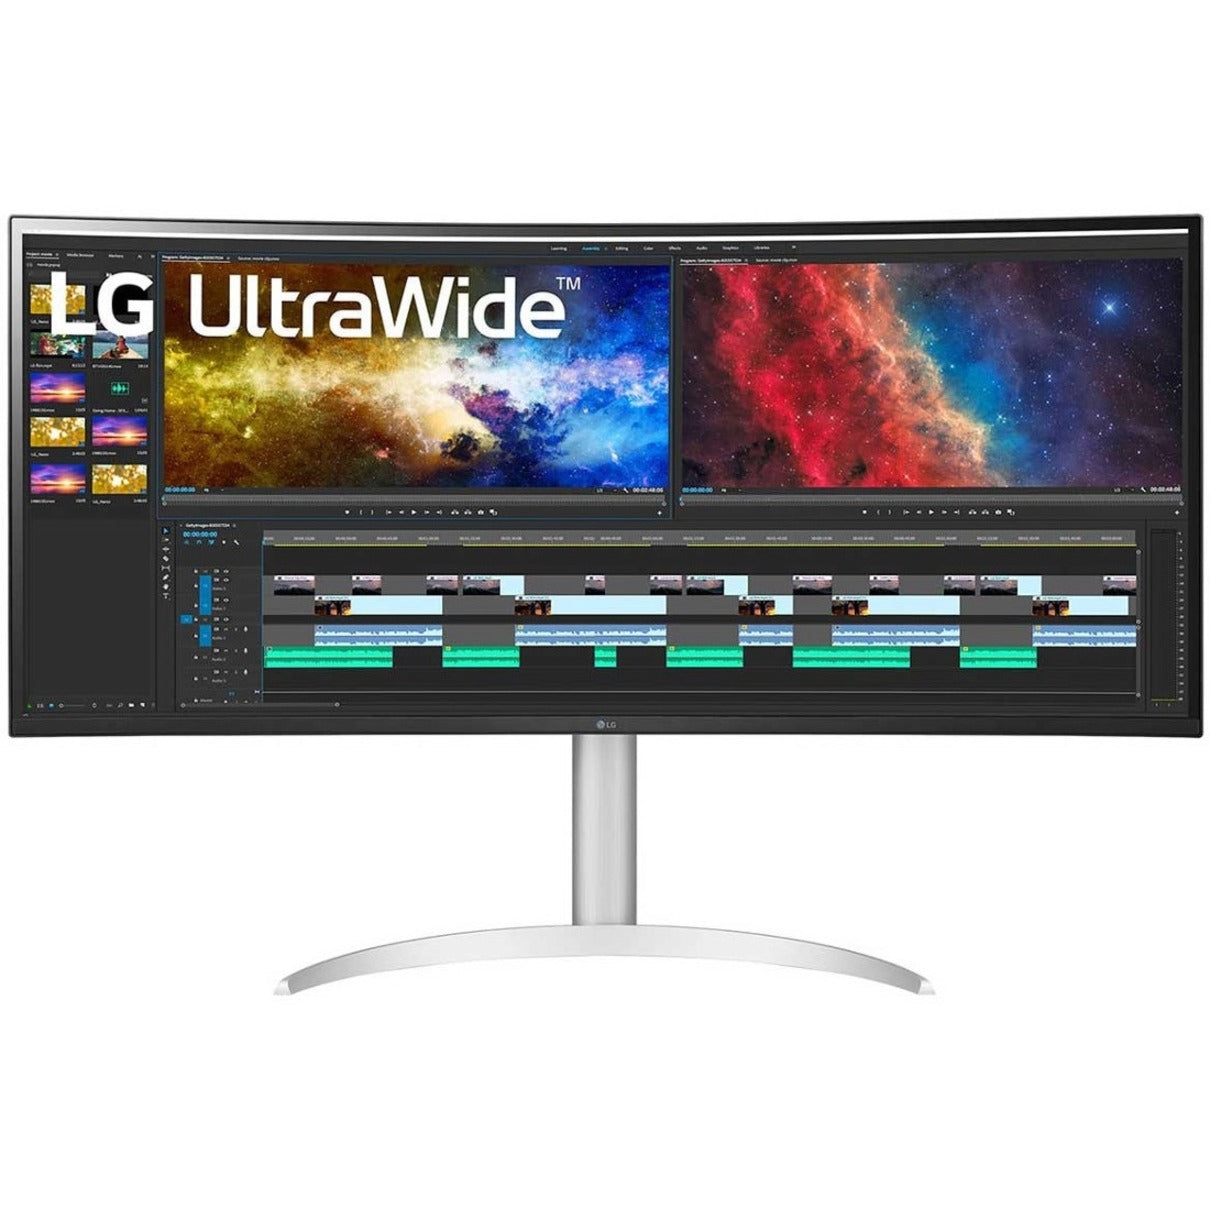 LG Ultrawide 38BP85C-W Moniteur de jeu LCD panoramique 3840 x 1600 USB Type-C HDMI DP AMD FreeSync 2 HDMI 300 nits 95% DCI-P3 (CIE 1976) 107 milliard de couleurs garantie de 3 ans